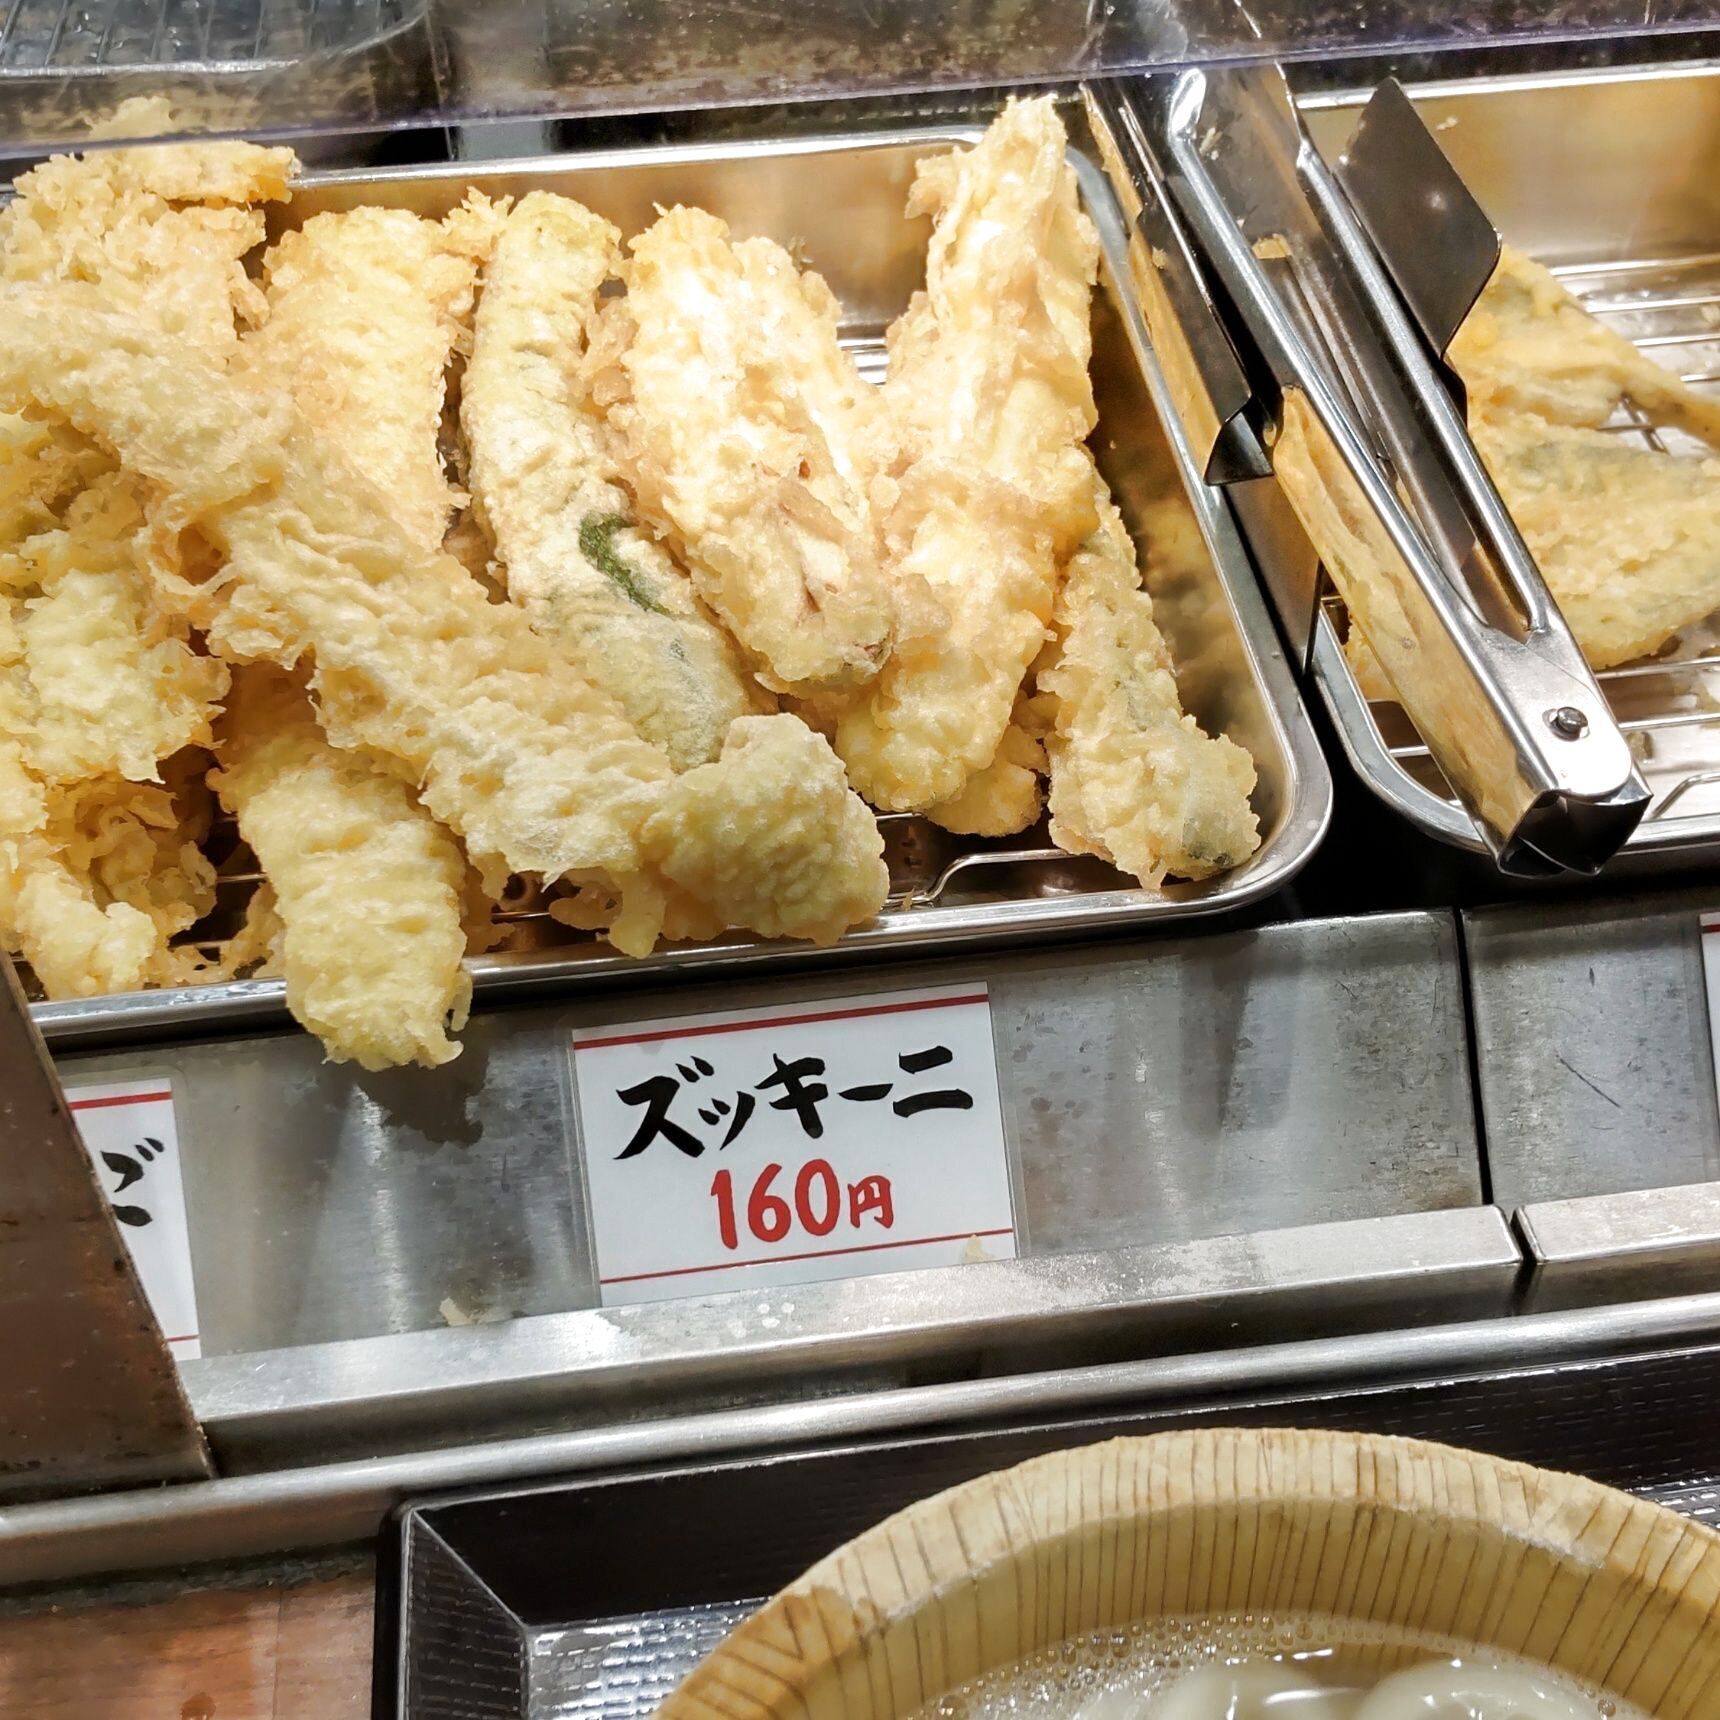 天ぷらなどの中に「ズッキーニ」も並んでいましたよ。